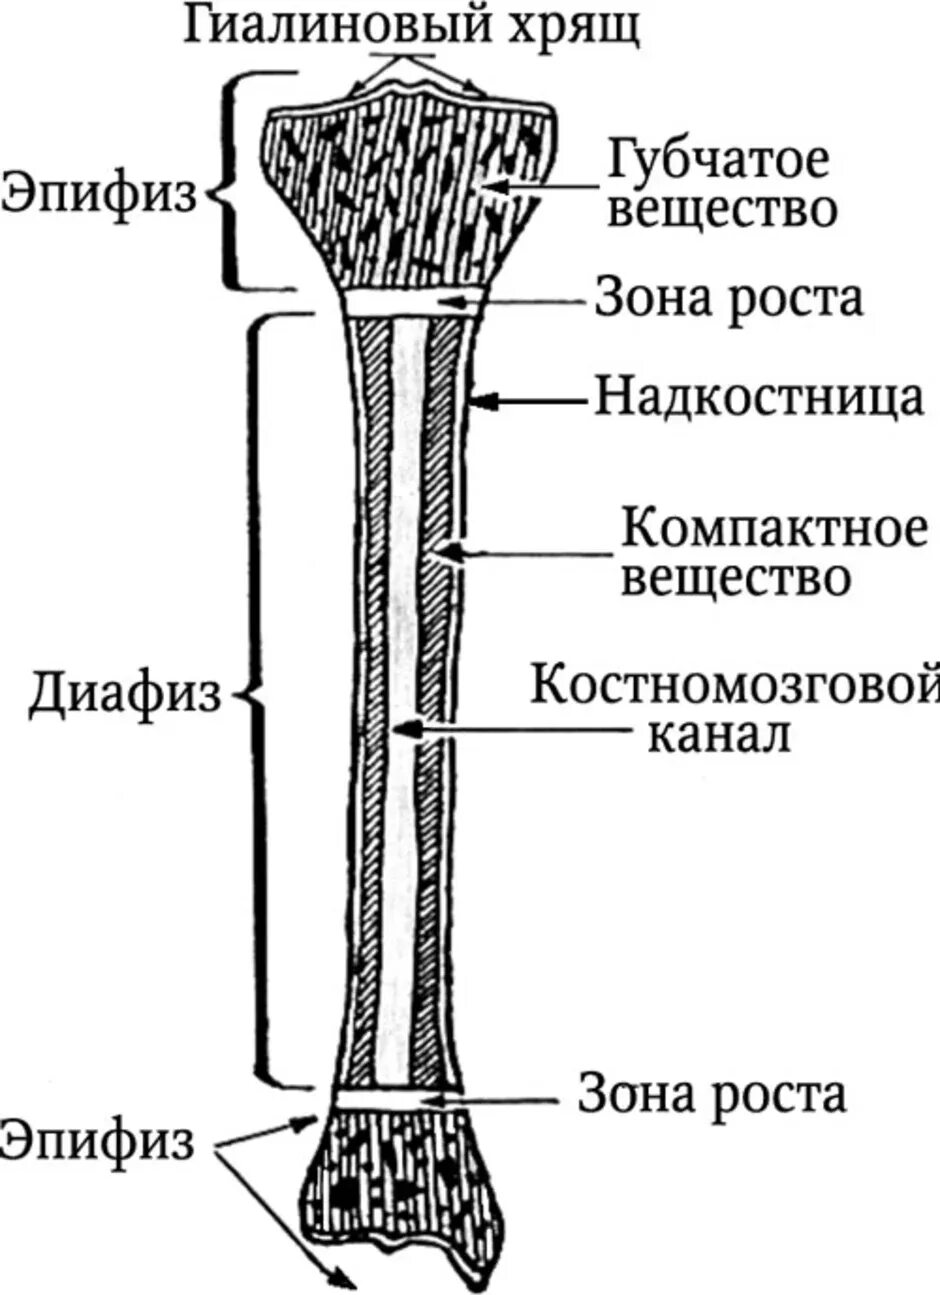 Что образуют трубчатые кости. Строение длинной трубчатой кости анатомия. Нарисуйте схему строения трубчатой кости. Эпифиз метафиз диафиз костей. Нарисовать схему строения трубчатой кости.